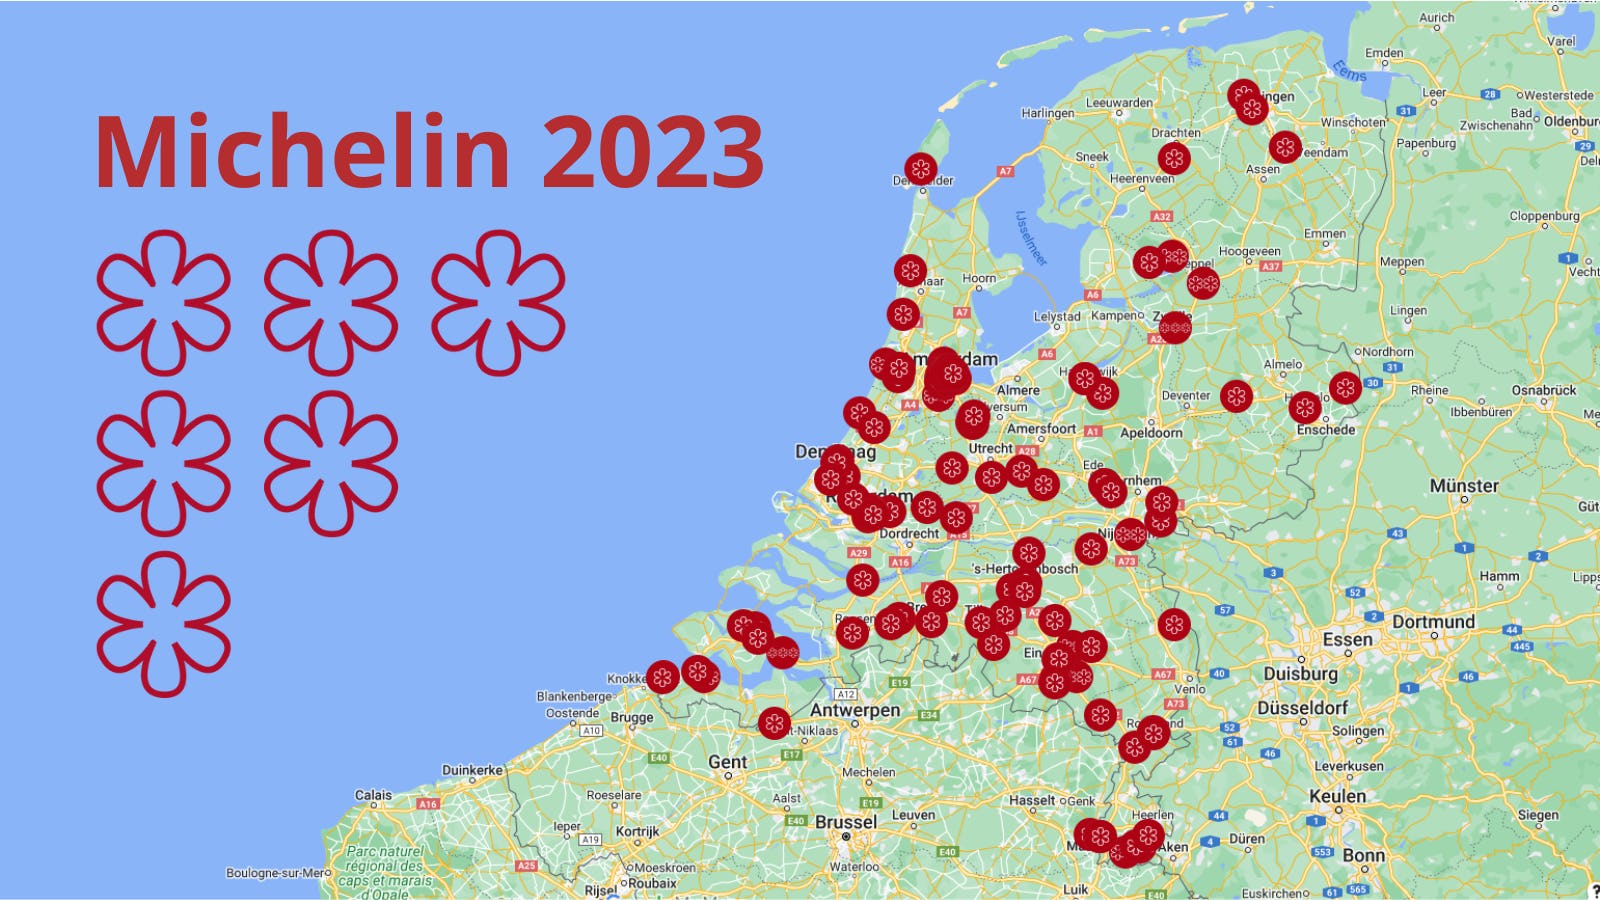 Michelinsterren 2023 in kaart